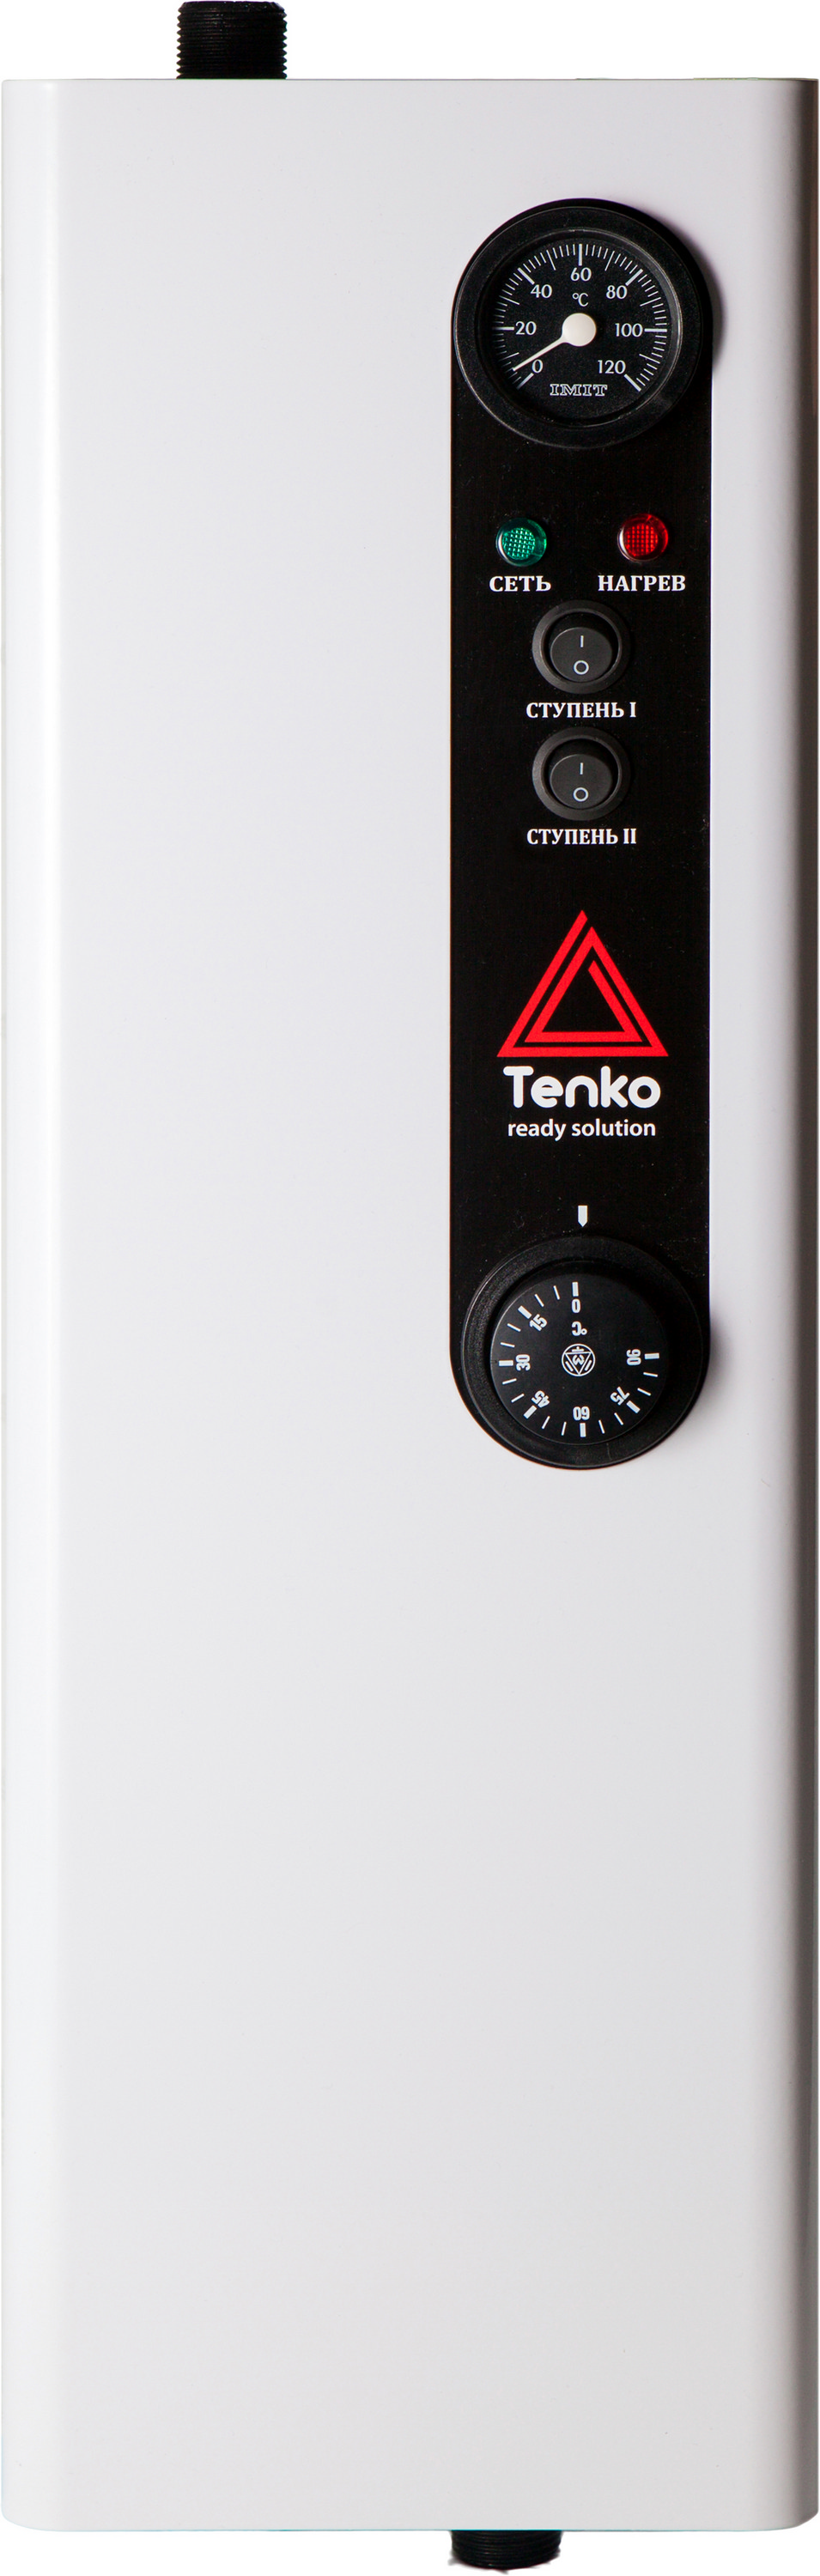 Отзывы одноконтурный электрокотел Tenko Эконом 6 220 в Украине